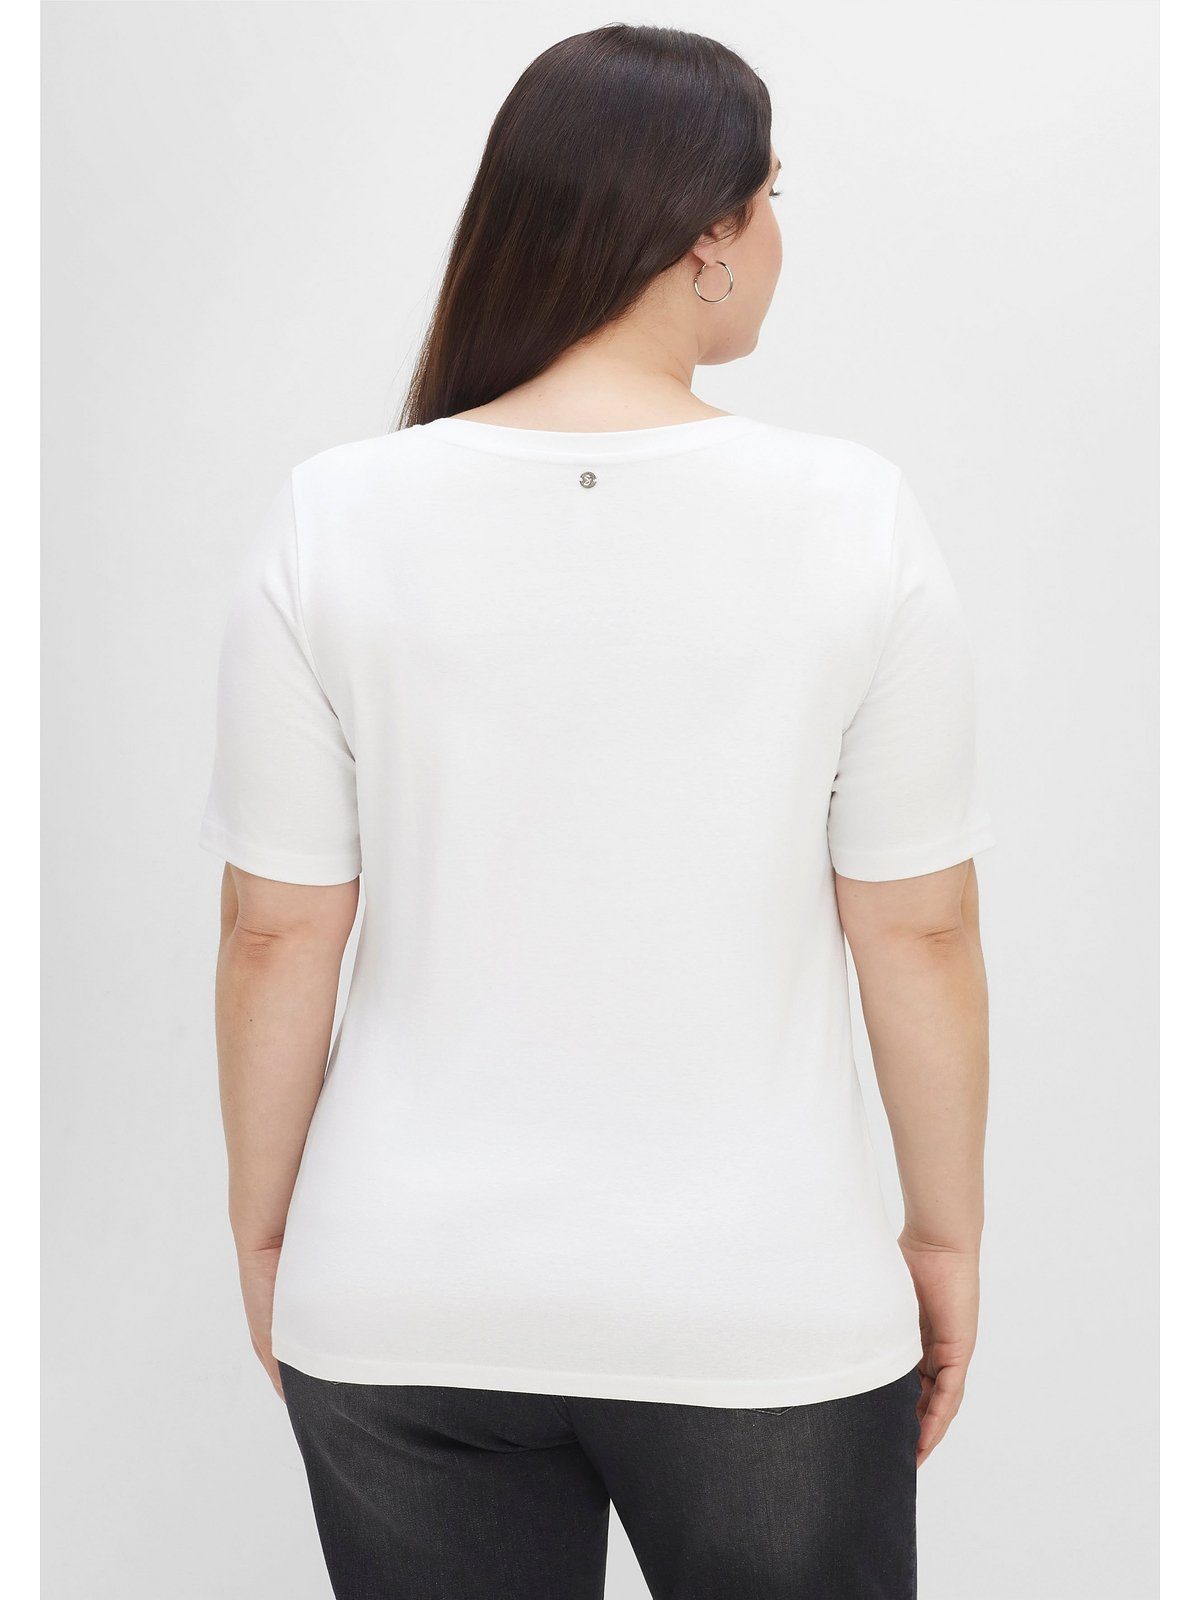 Sheego T-Shirt Große Größen in Knopfleiste mit Rippstruktur, weiß